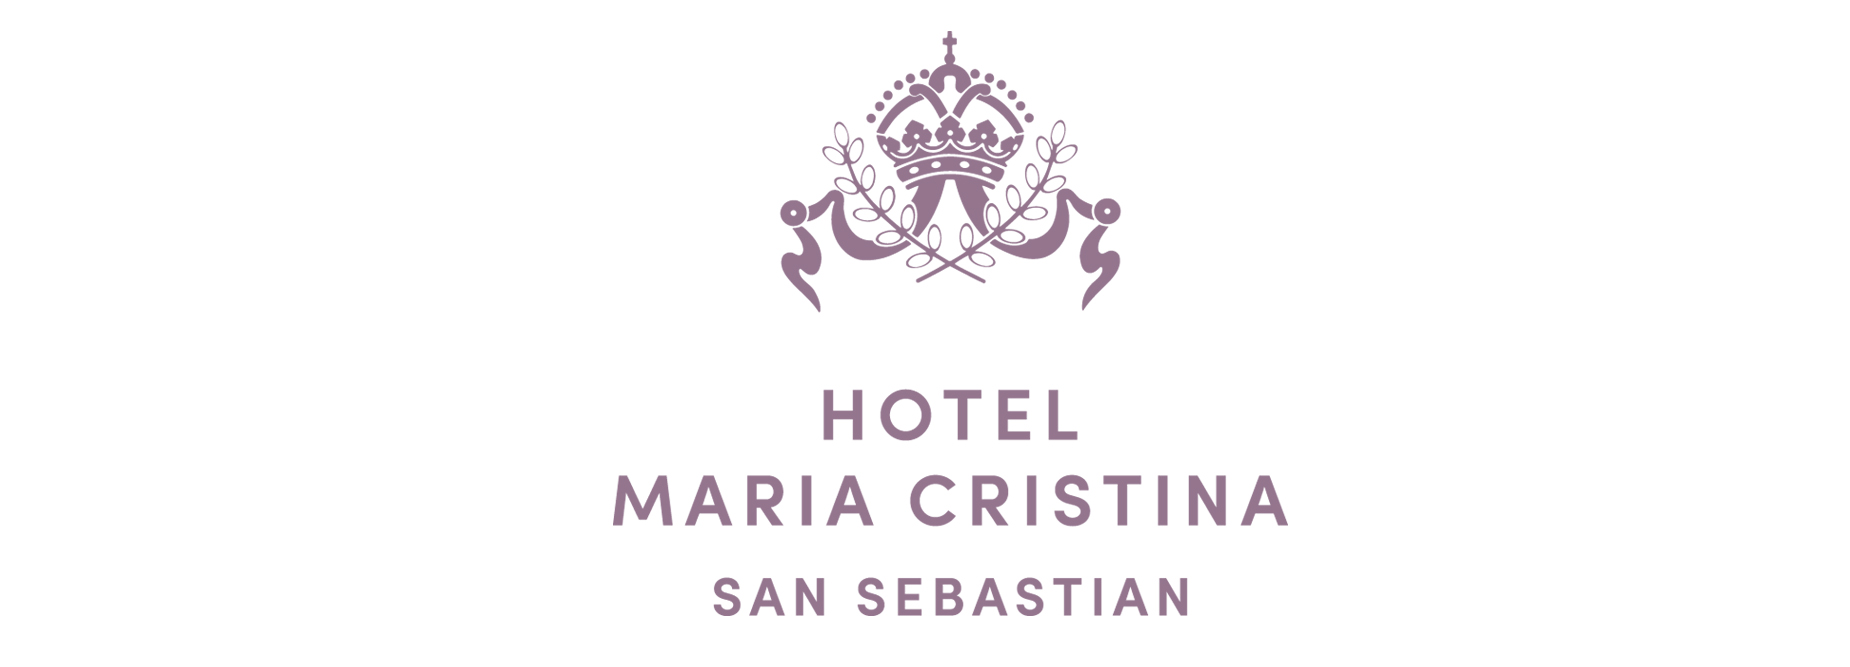 hotel maria cristina lp